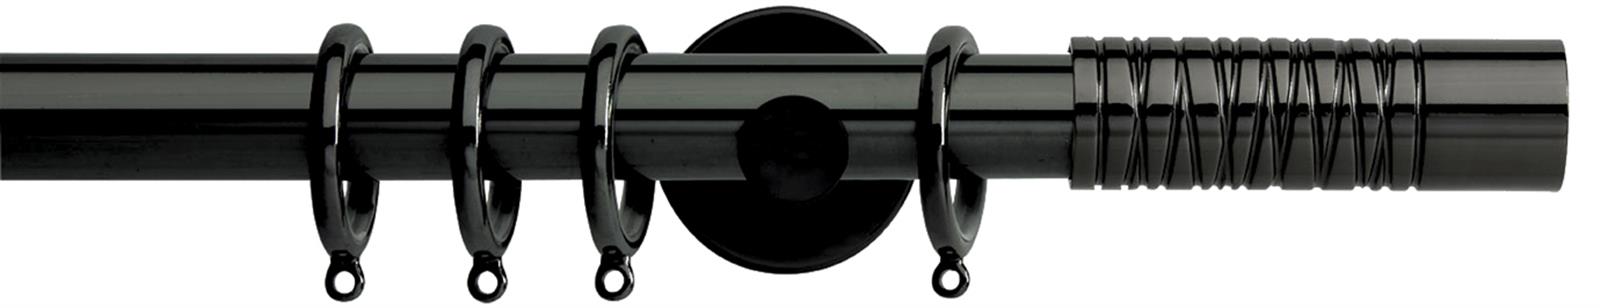 Neo Premium 28mm Pole Black Nickel Cylinder Wired Barrel